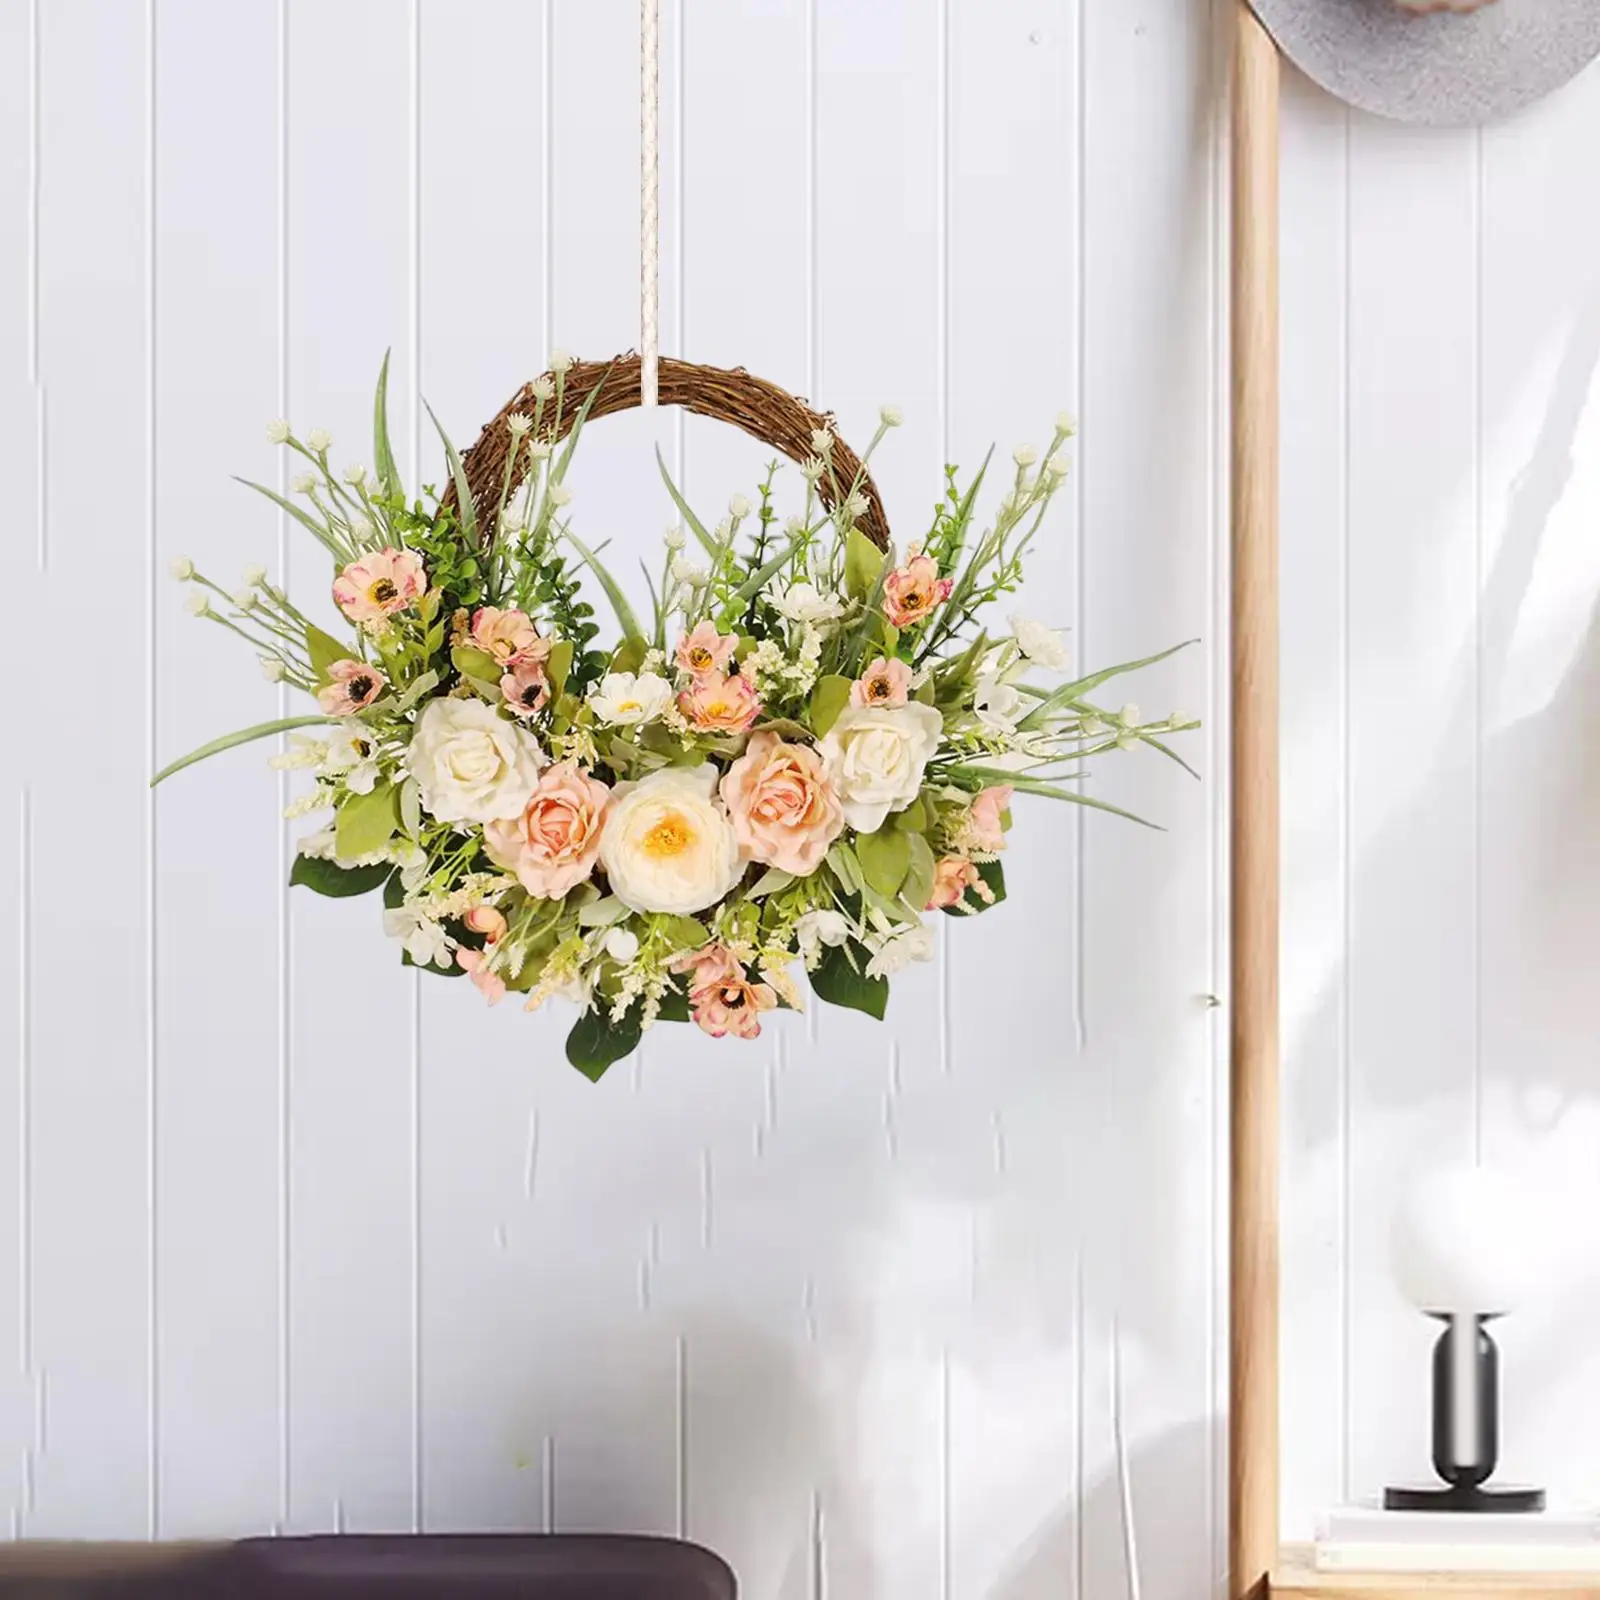 Artificial Flower Wreath Hanging Ornament Garland for Window Wedding Outdoor Indoor